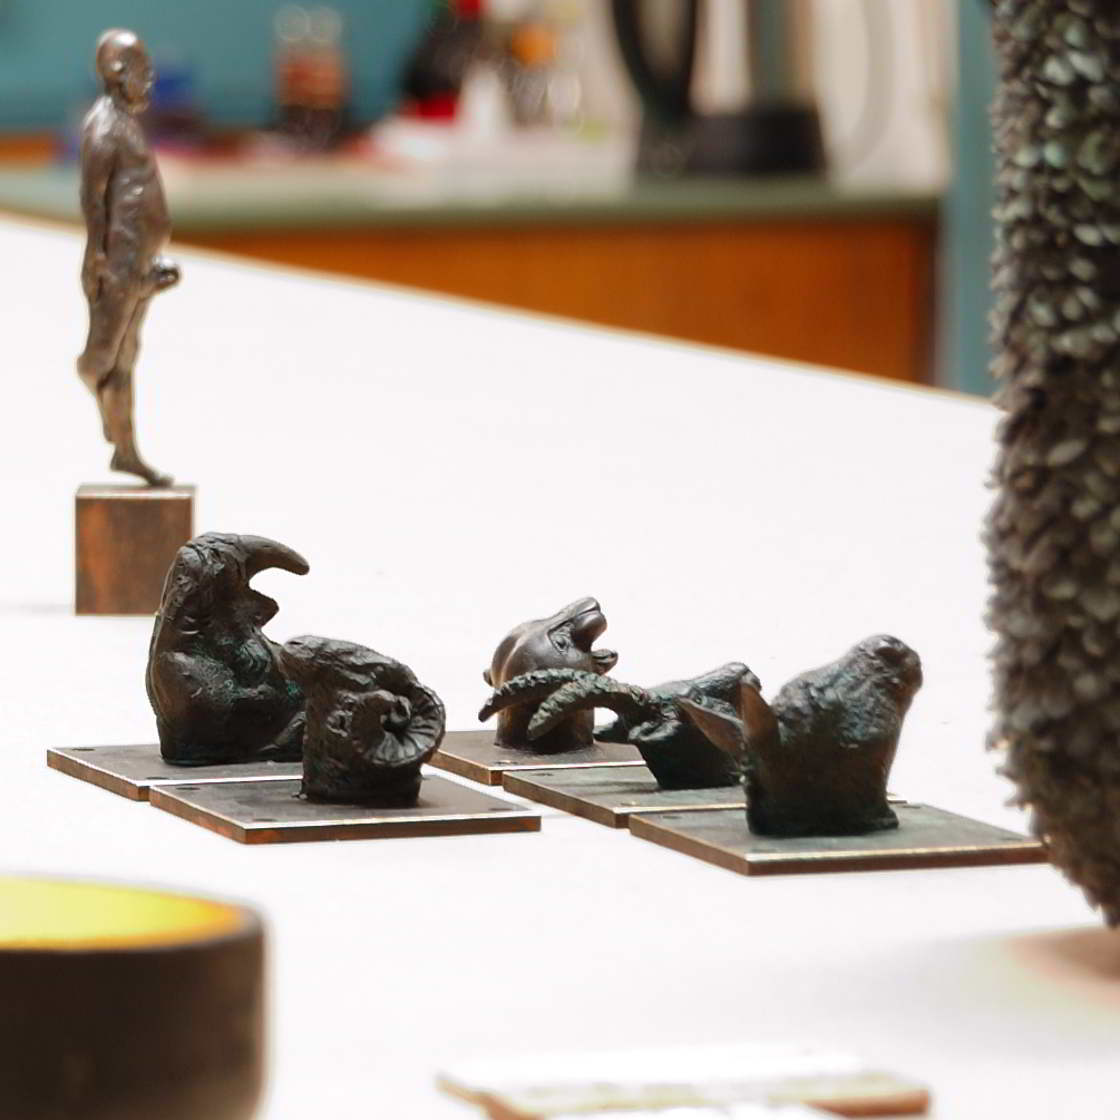 kleine Tierkopf Skulturen wie Widder, Nashorn, Esel, Steinbock und Jaguar. Im Hintergrund ist ein männlicher Akt in Bronze gegossen und auf einem Kupfersockel stehend zu sehen. Im Vordergrund ist ein Gefäß angeschnitten, dass eine sehr meditative Aura hat.